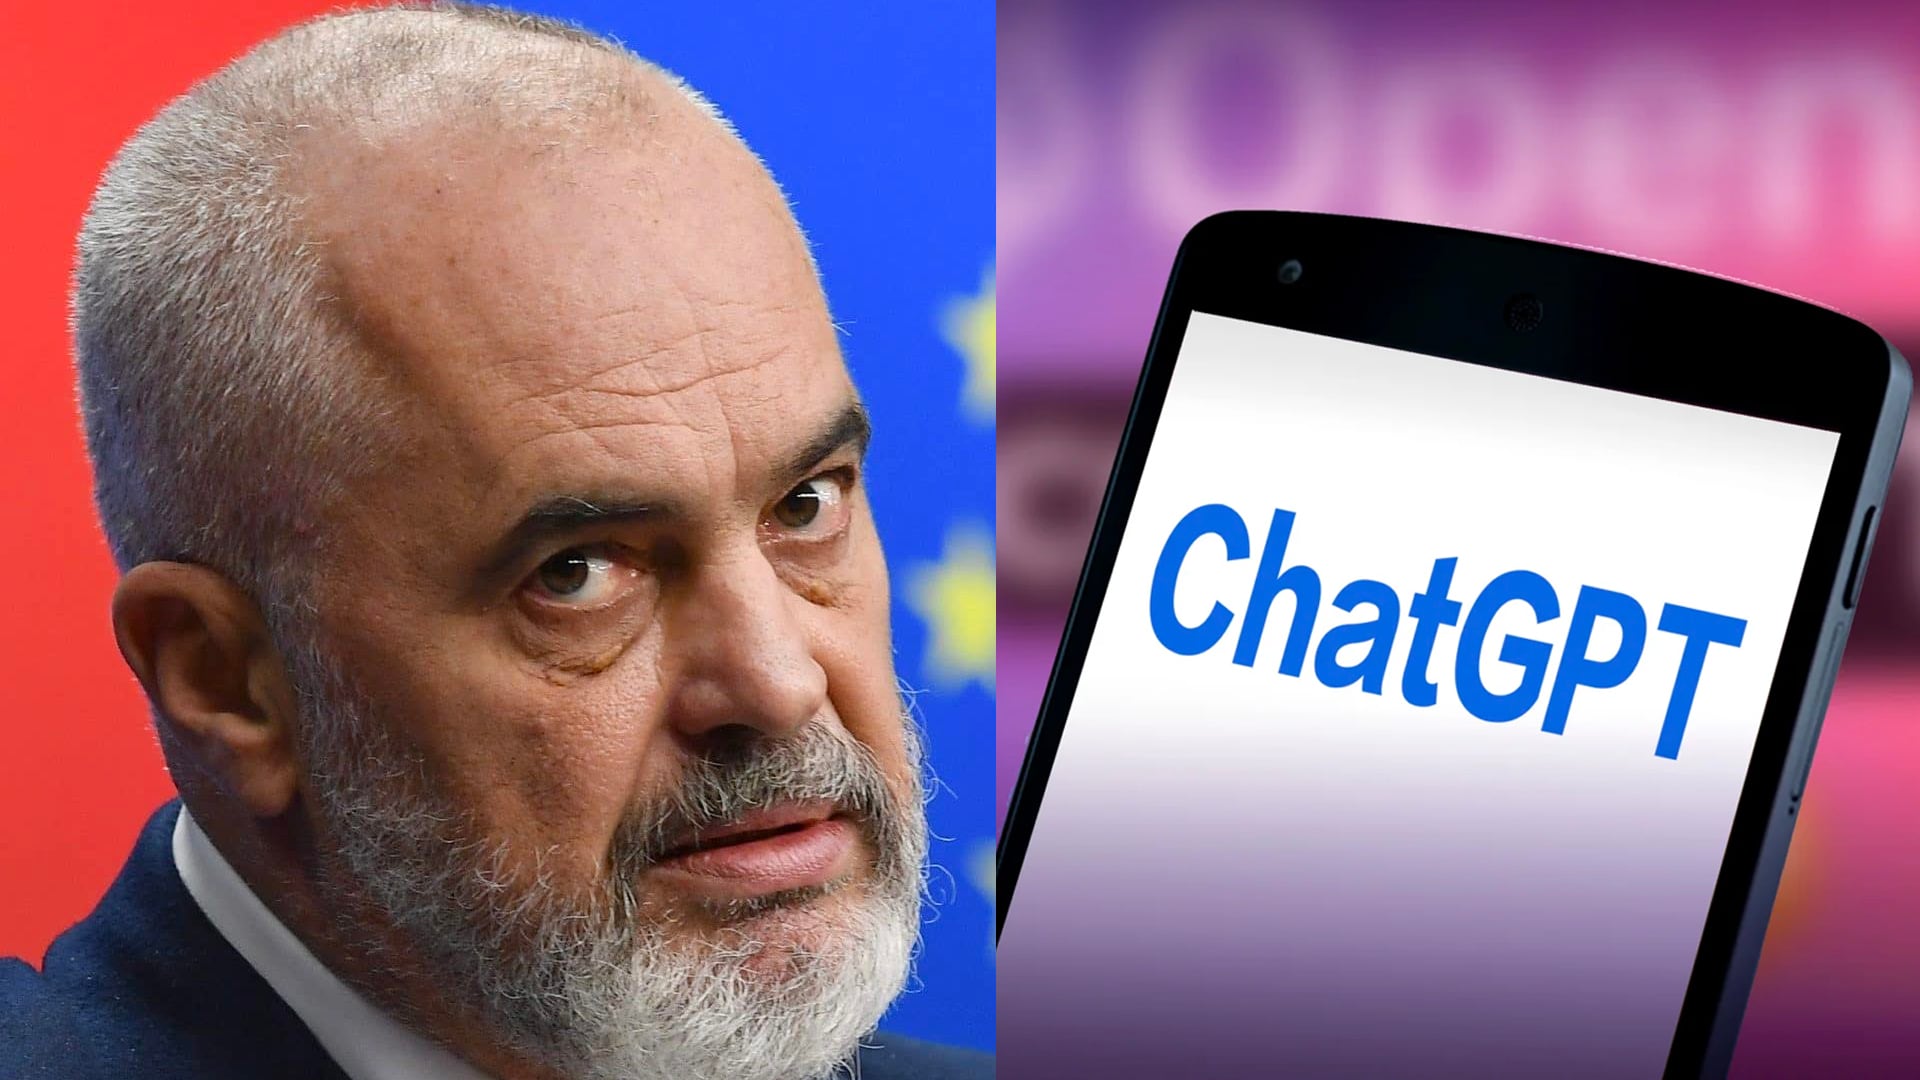 با اختیارات هوش مصنوعی: آلبانی روند الحاق به اتحادیه اروپا را با استفاده از ChatGPT تسریع کند